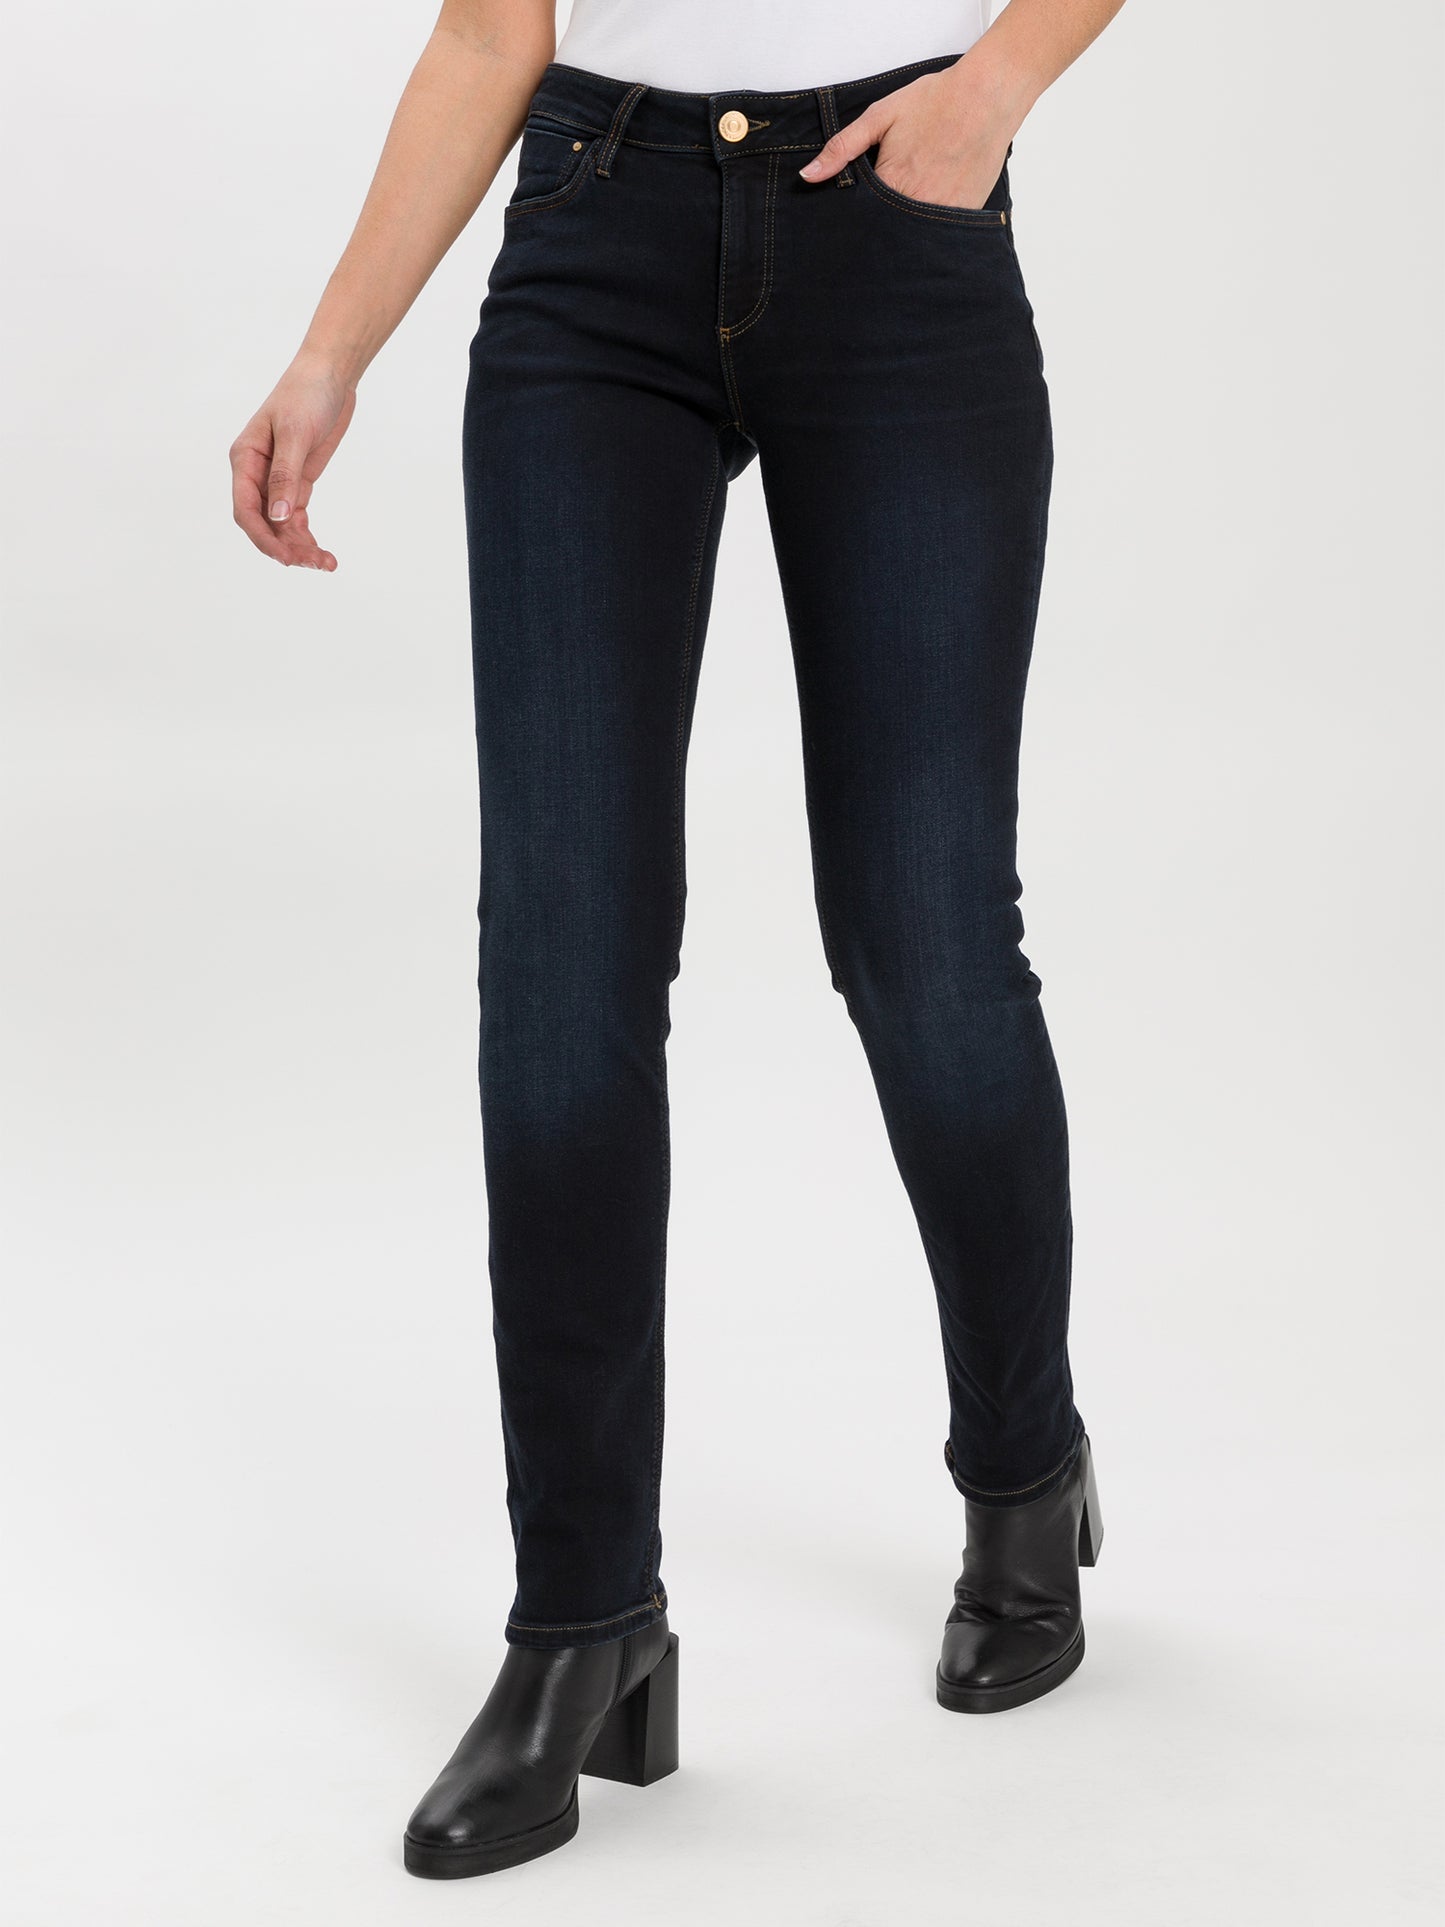 Rose Damen Jeans Regular Fit High Waist schwarz